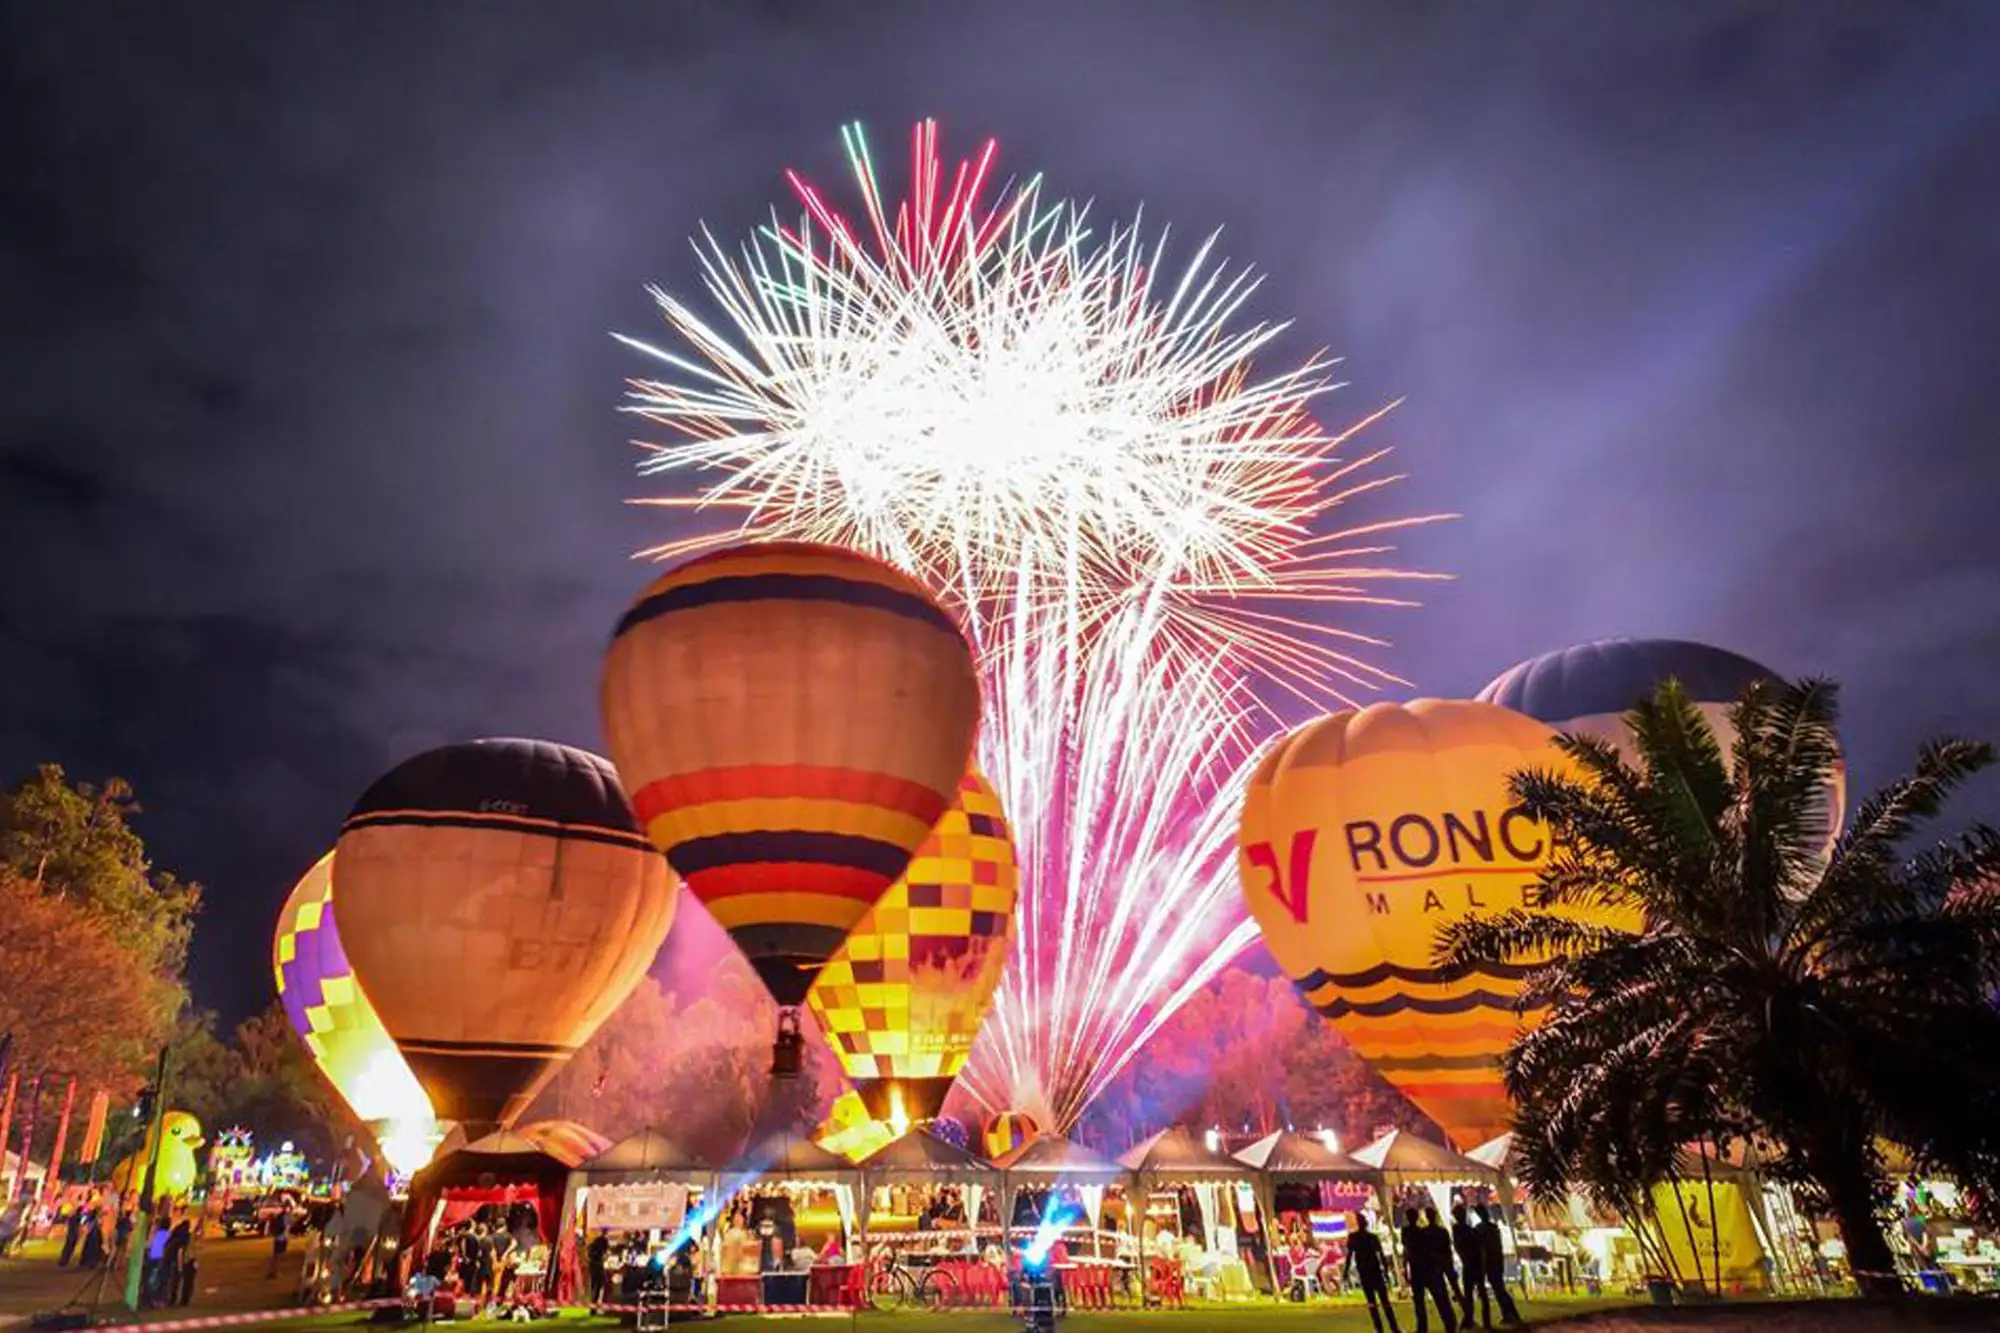 第10屆泰國國際熱氣球節(International Balloon Festival) 3月2-4日清邁盛大舉行